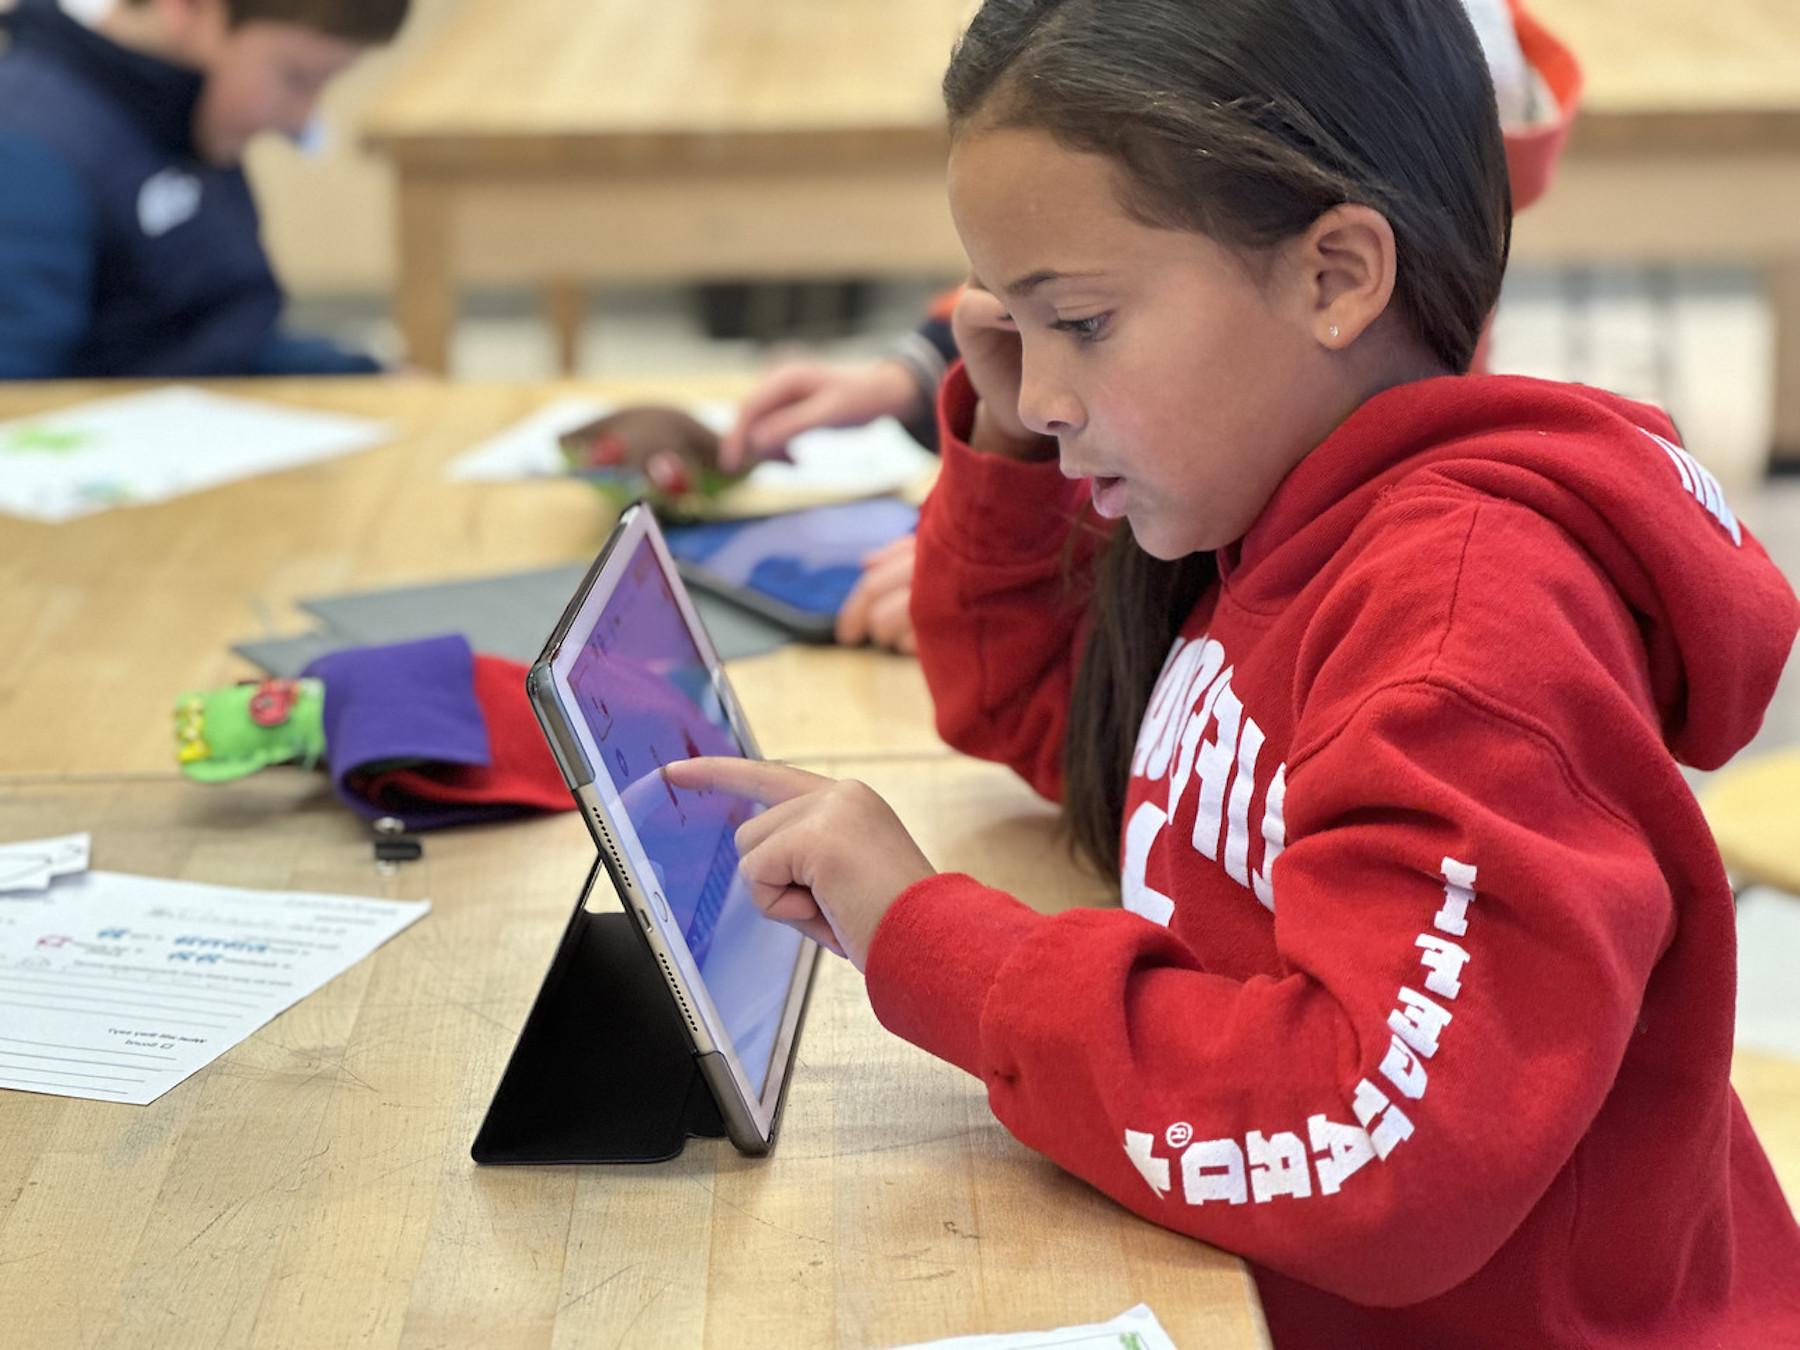 菲尔德斯顿低年级学生坐在桌子前用iPad工作.